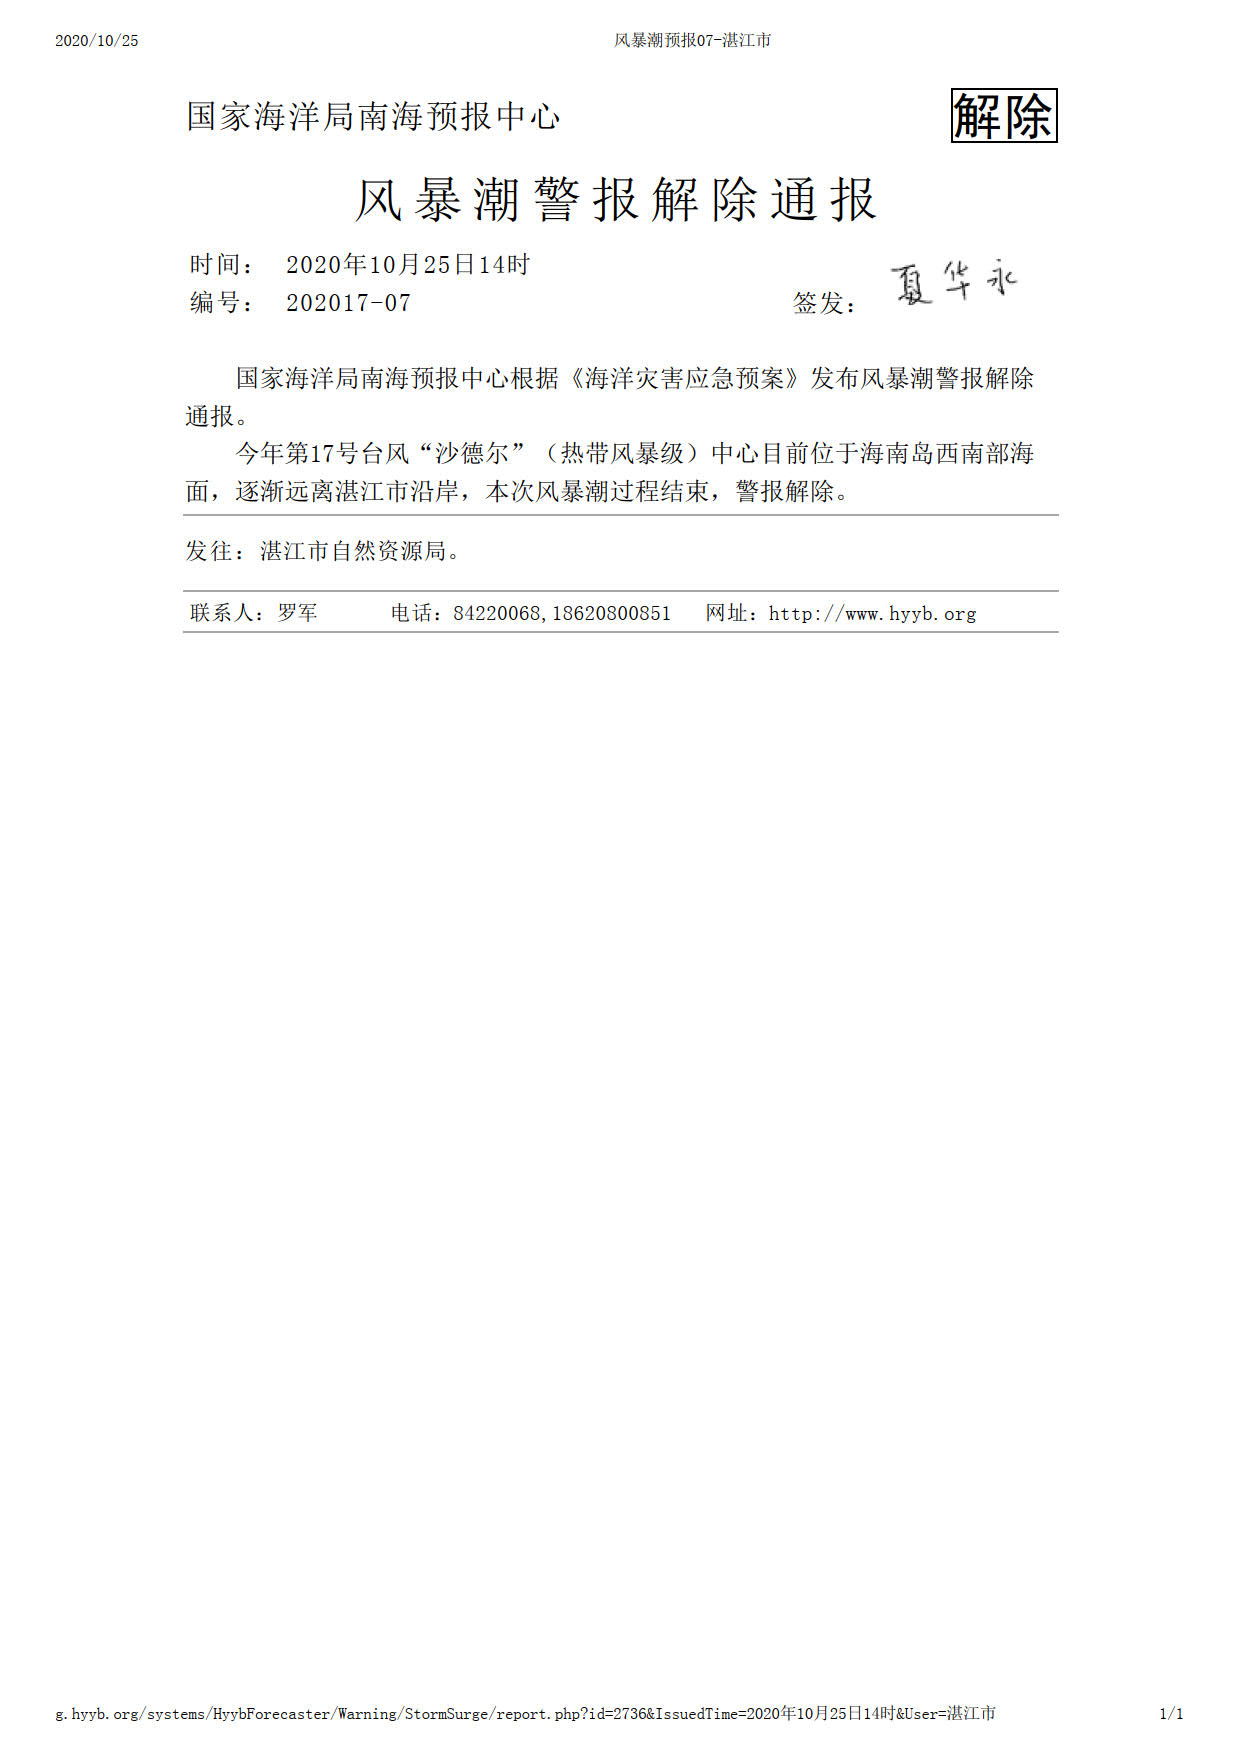 风暴潮警报解除通报07-湛江市2020年10月25日14：00时.jpg